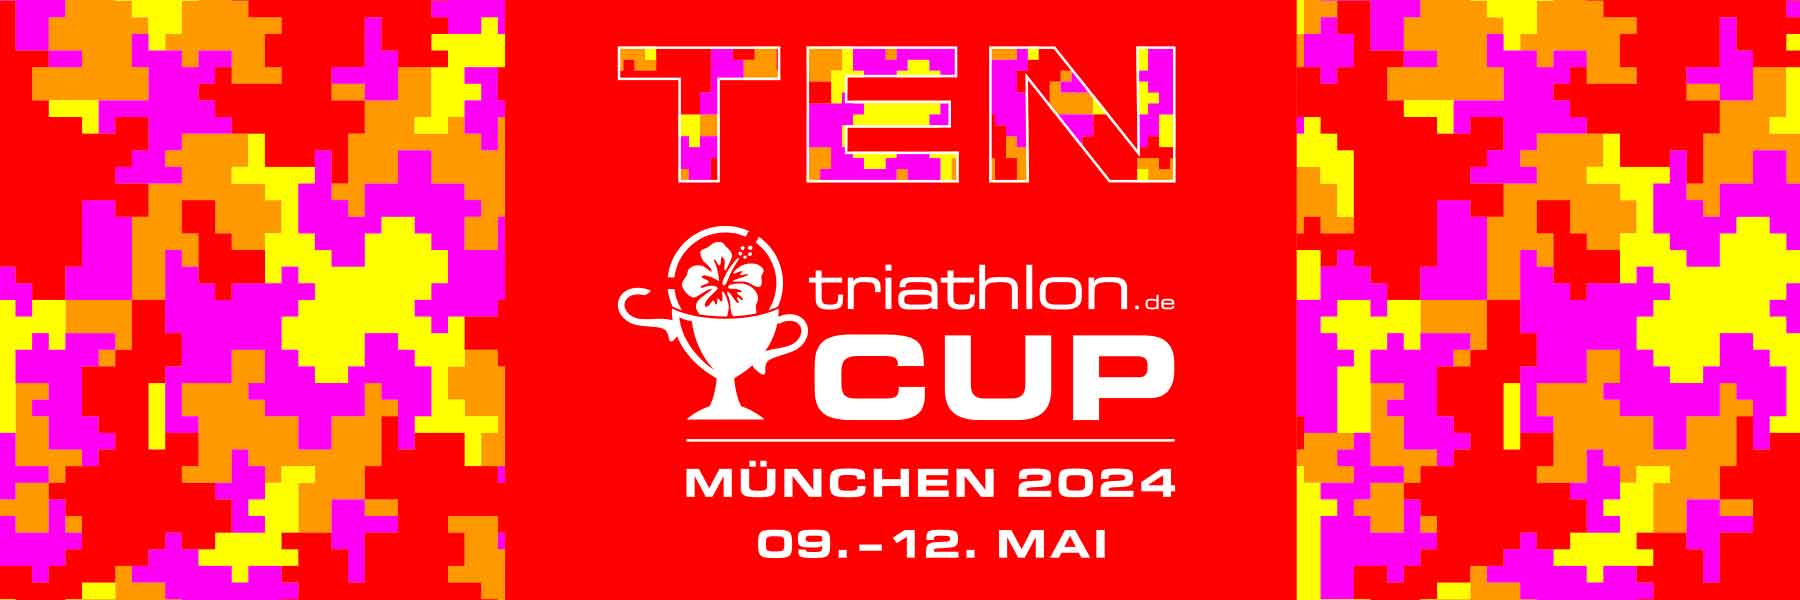 triathlon.de CUP München: Powerbar Angebote